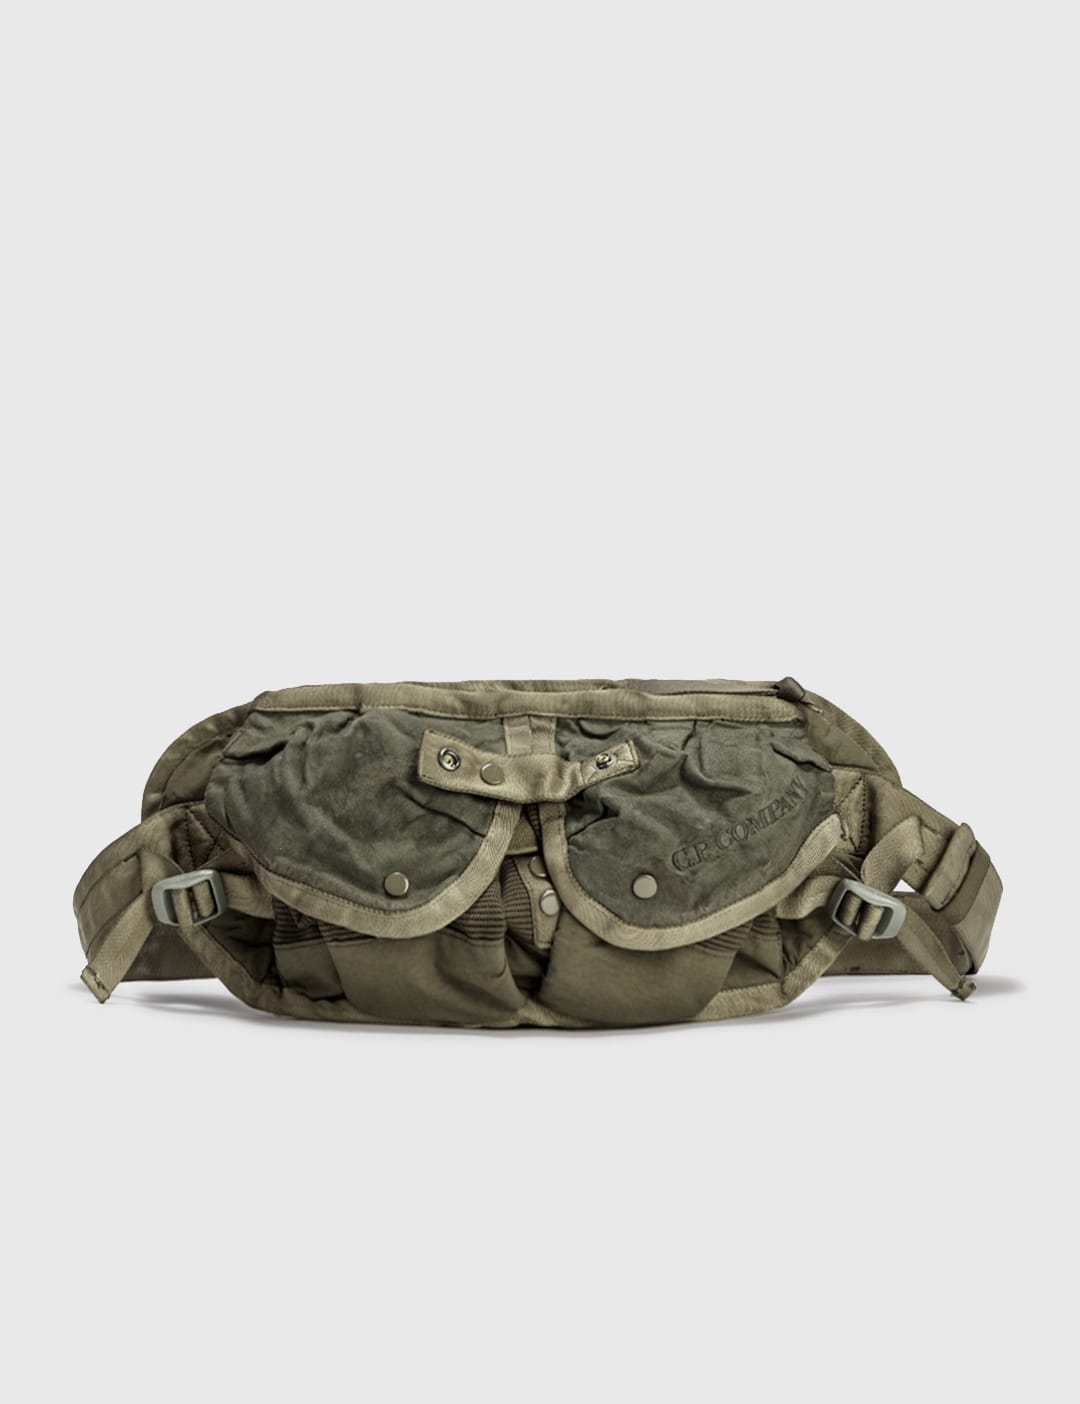 Sacai - Sacai x Porter Tactical Drawstring Bag | HBX - Globally 